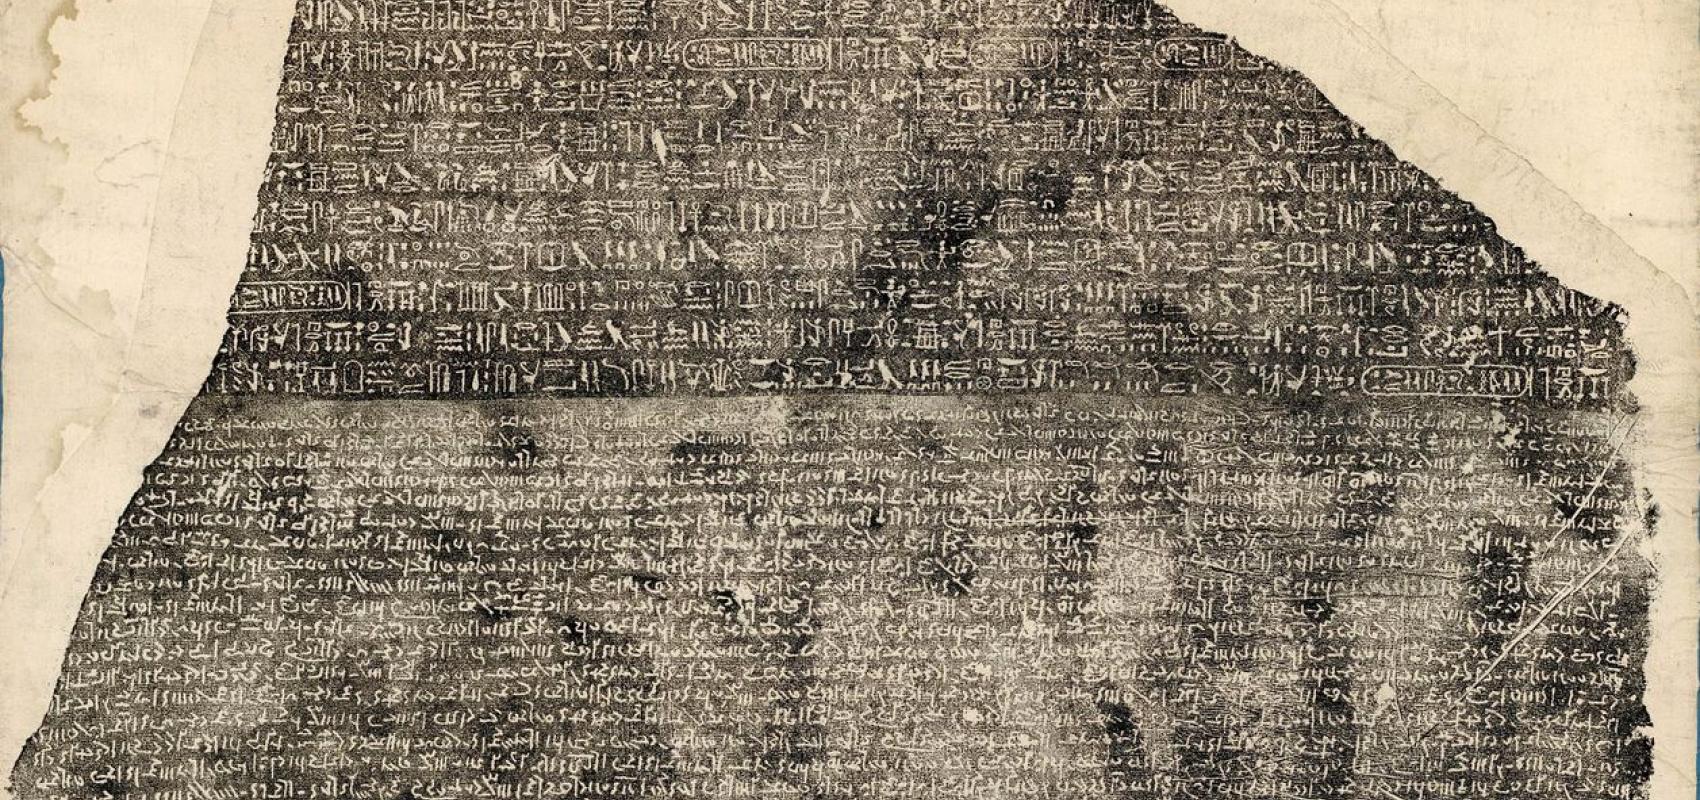 Copie des 3 inscriptions qui se trouvent sur la pierre trouvée à Rosette – Estampage à l'encre noire sur papier verger -  - BnF, département des Manuscrits